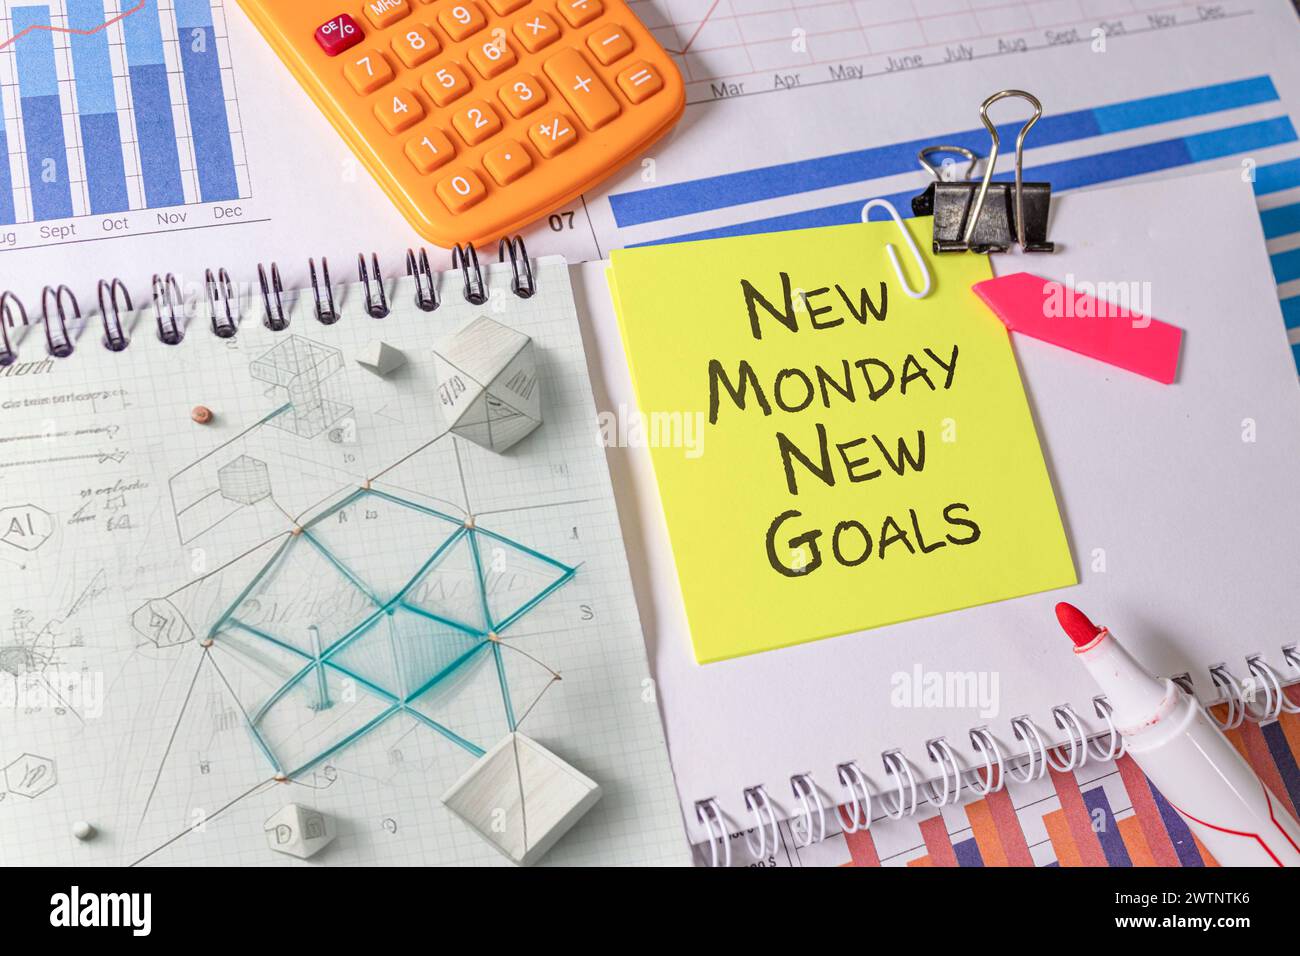 Nouveau lundi, nouveau concept de texte d'objectifs. Cahier spiralé manuel, crayon de bois, nouveau lundi, nouveaux objectifs. Banque D'Images